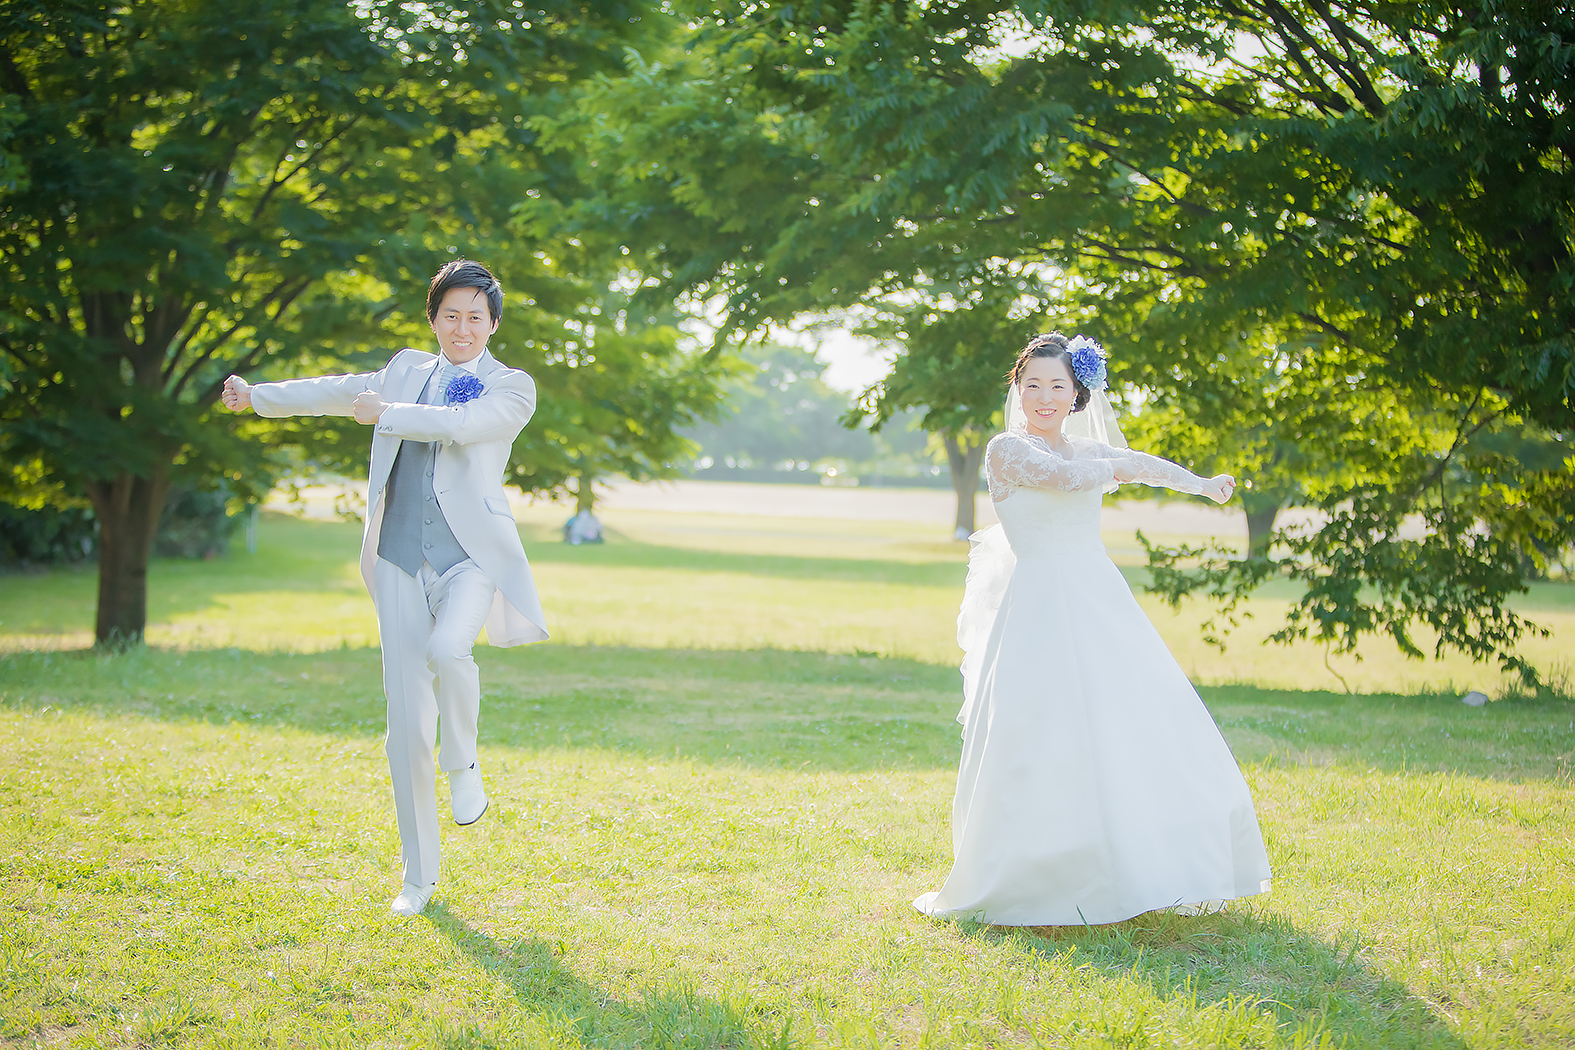 面白いポーズ満載の楽しいフォトウェディング 埼玉の写真館 林写真館